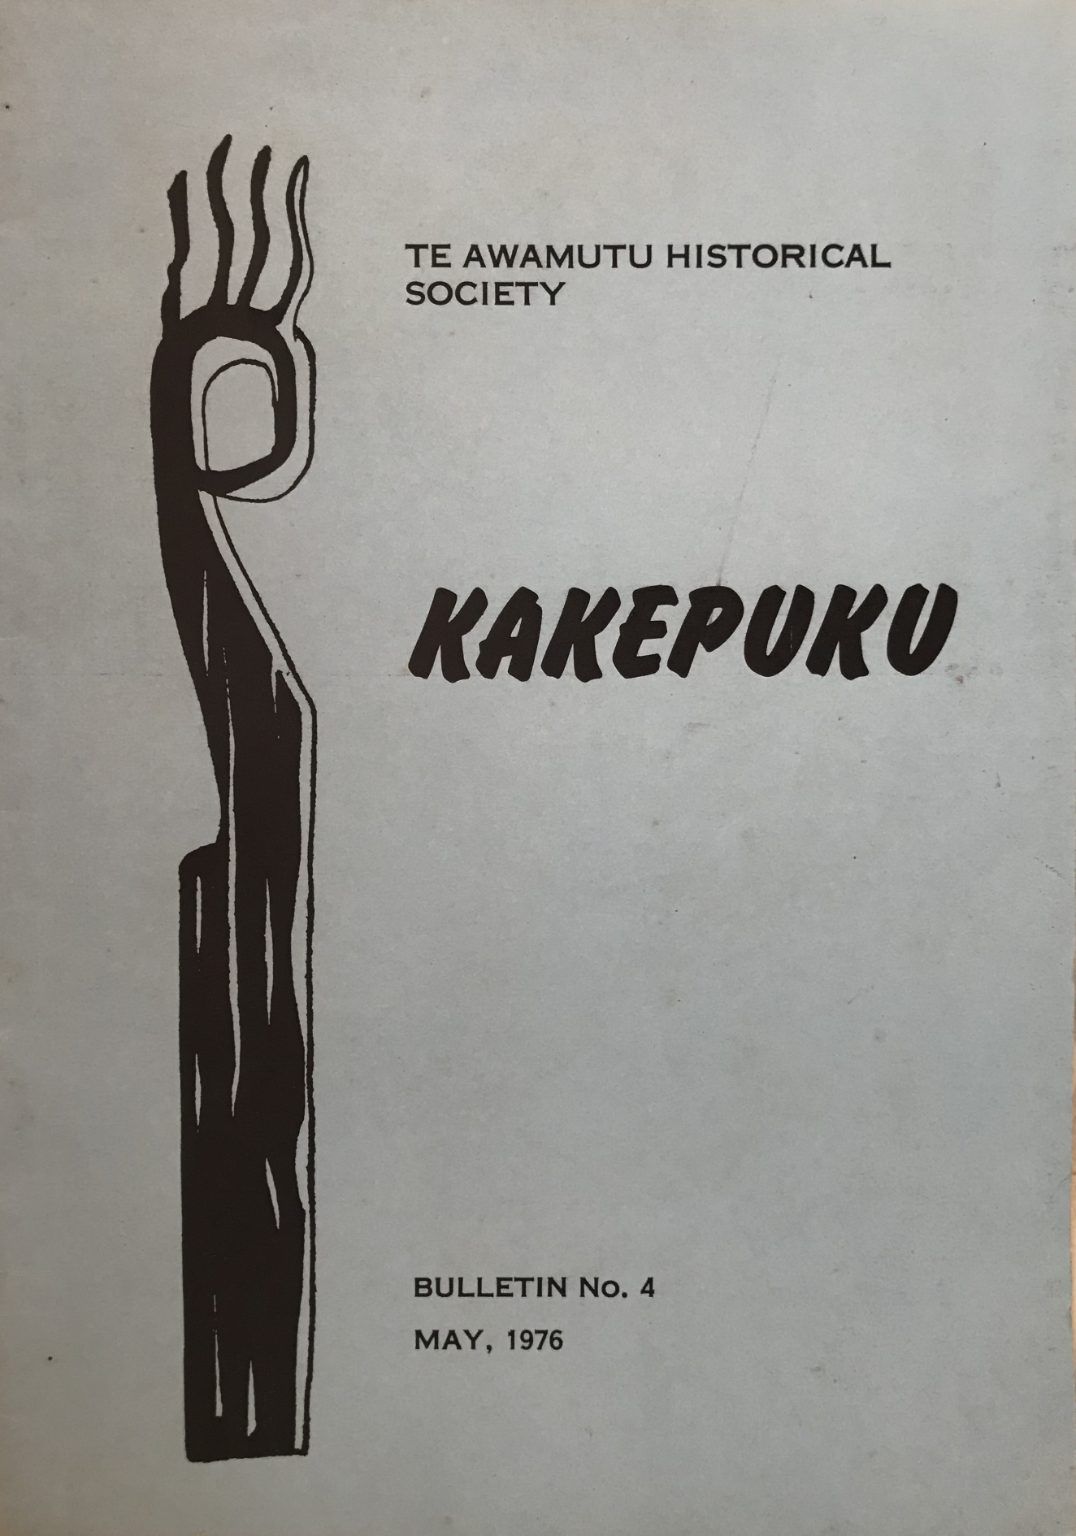 KAKEPUKU: Bulletin No. 4, May 1976